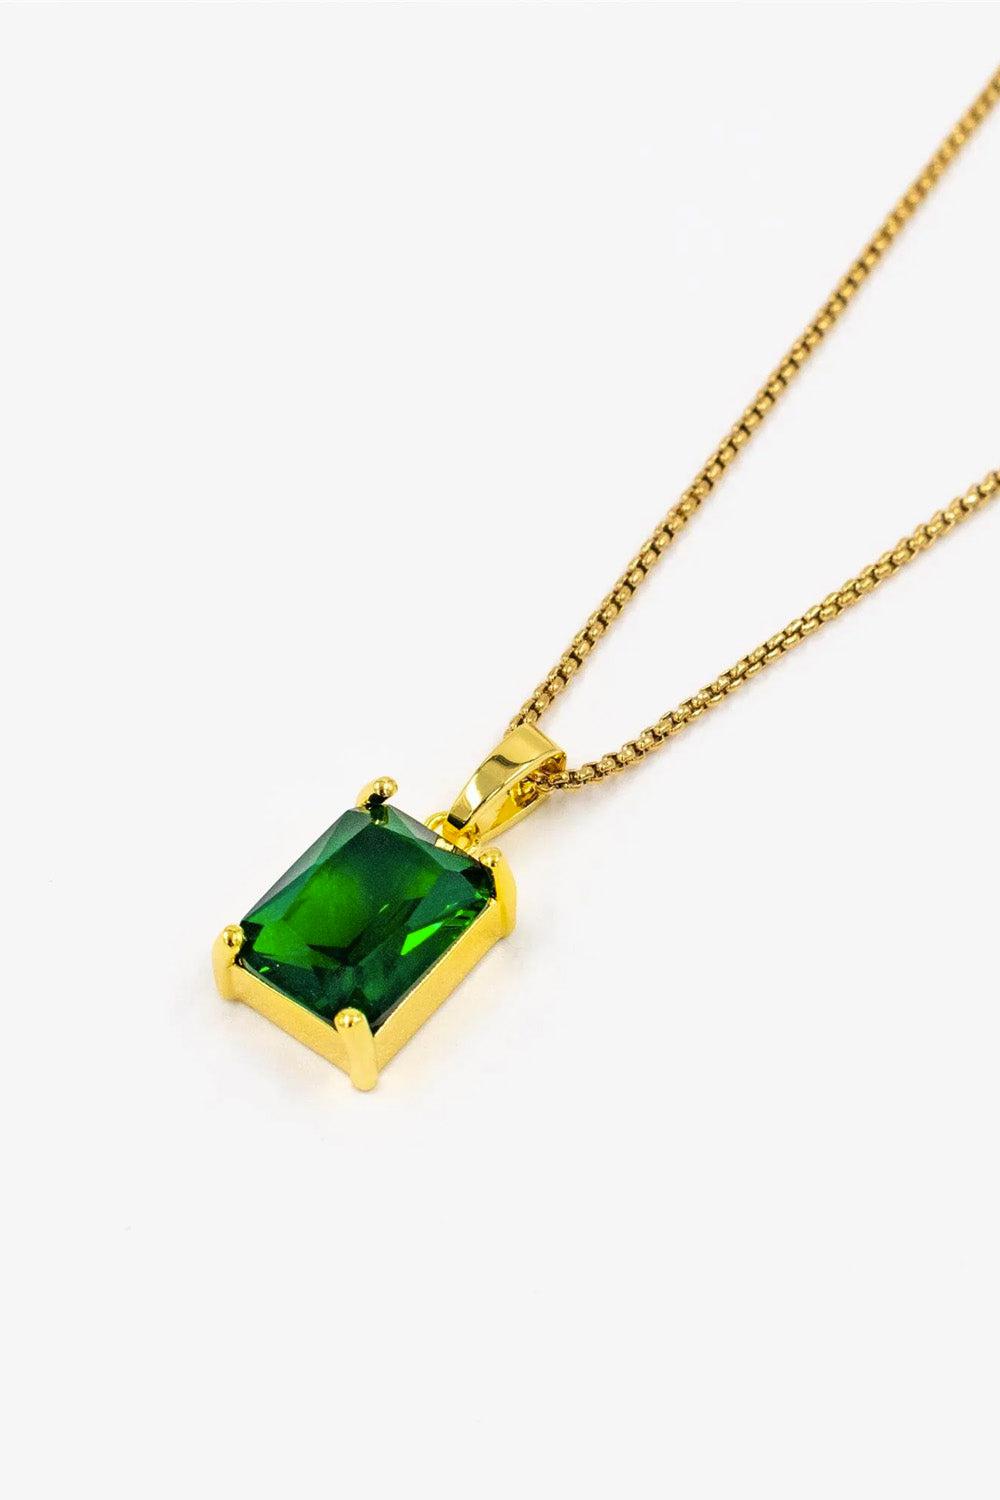 Gem-necklace-gold-emerald